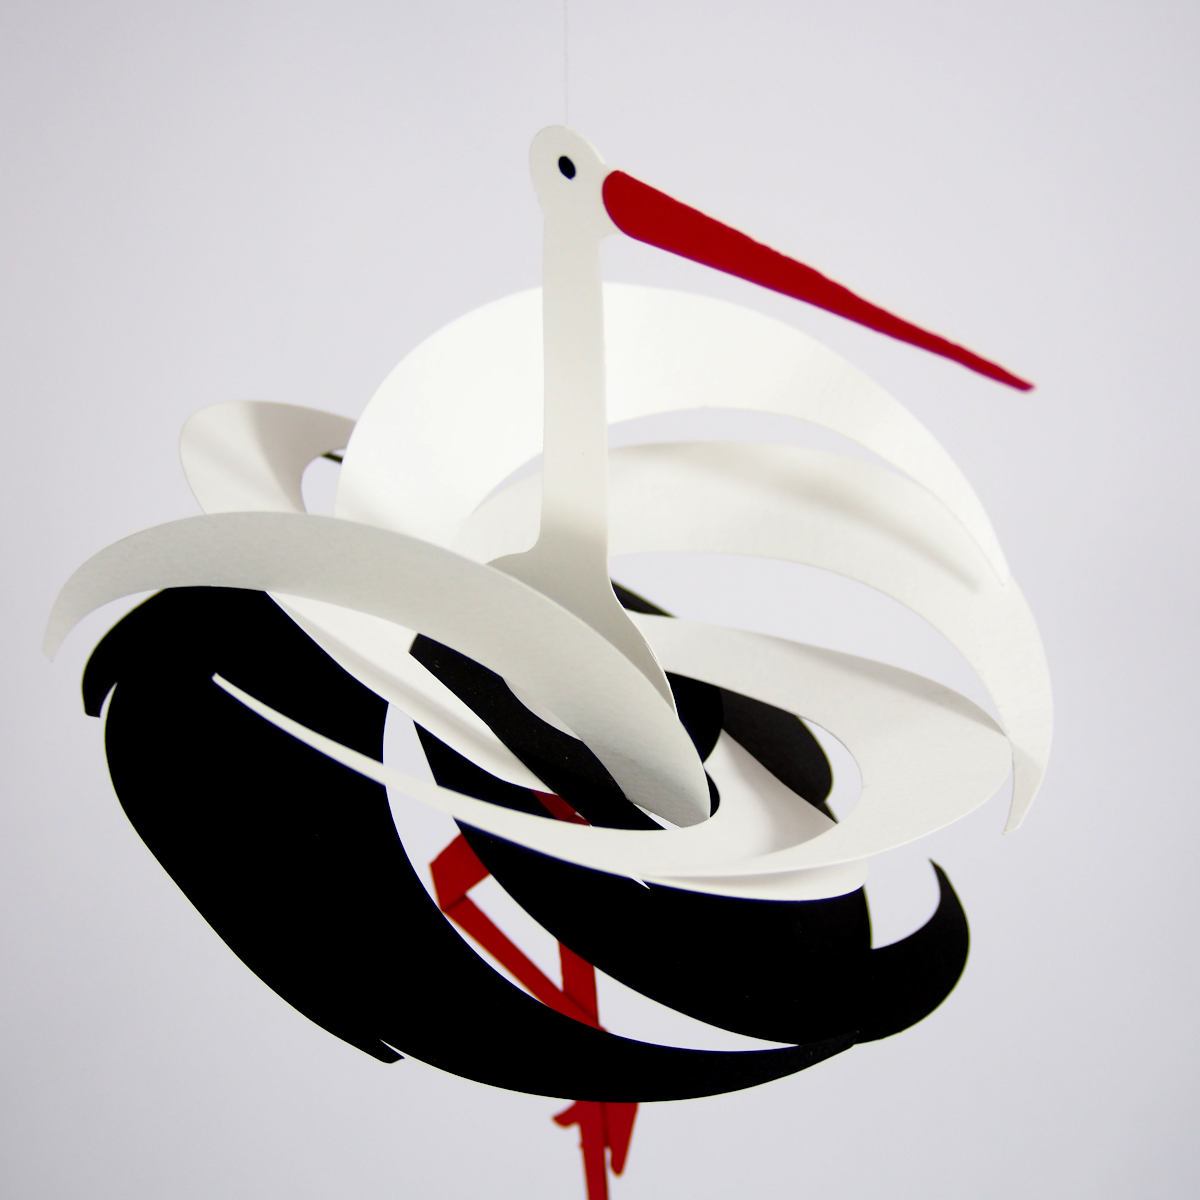 Handmade Danish Stork Mobile made of Paper